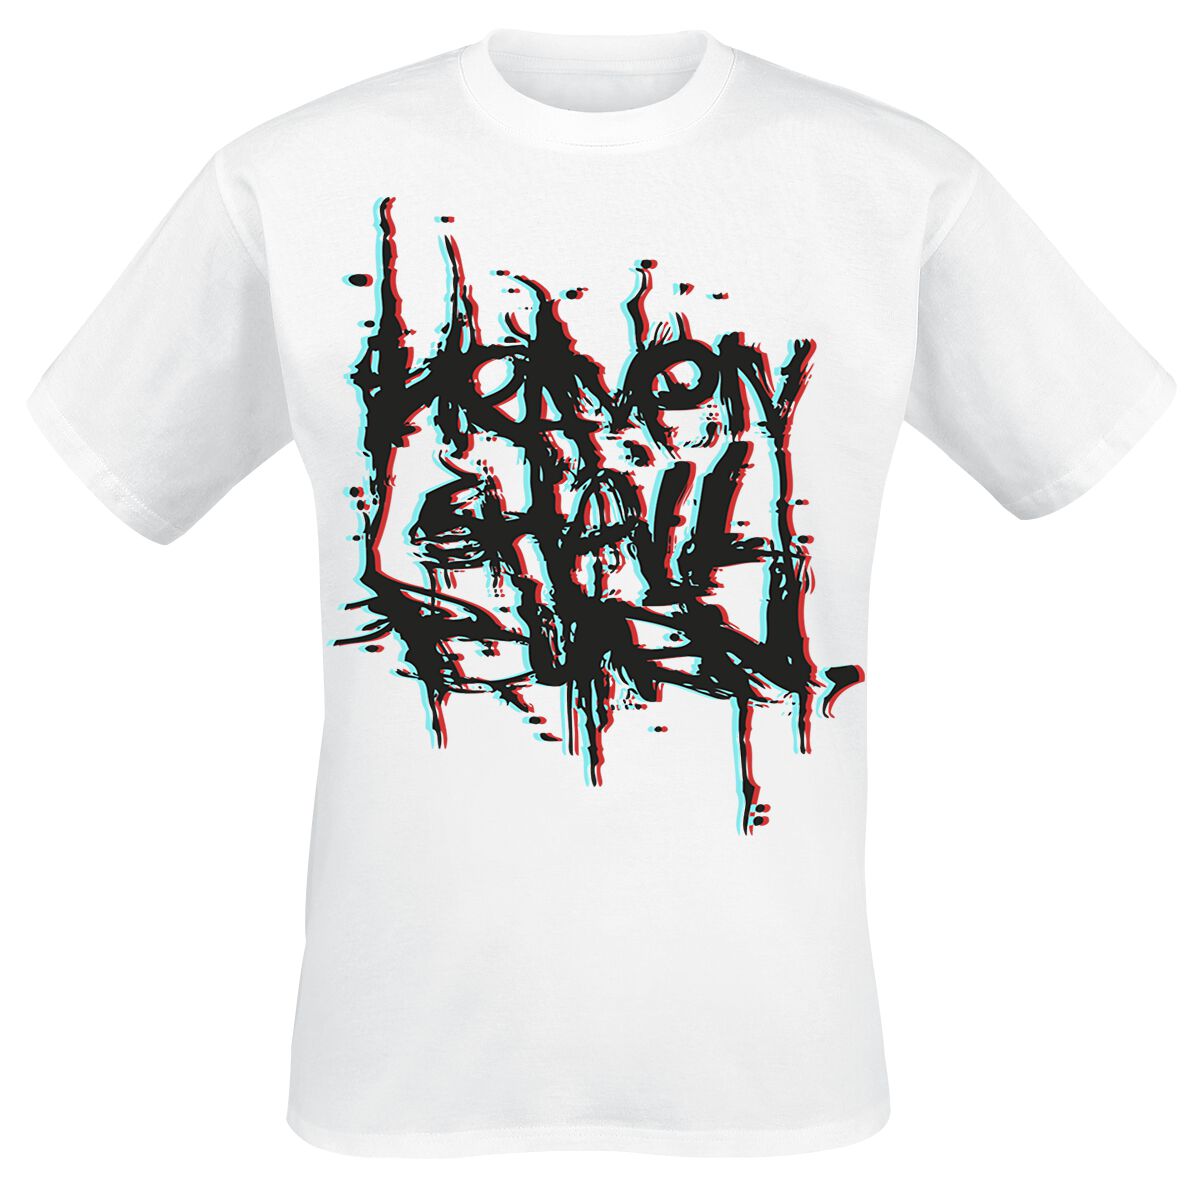 Heaven Shall Burn T-Shirt - 3D Logo - S bis XXL - für Männer - Größe XXL - weiß  - Lizenziertes Merchandise!